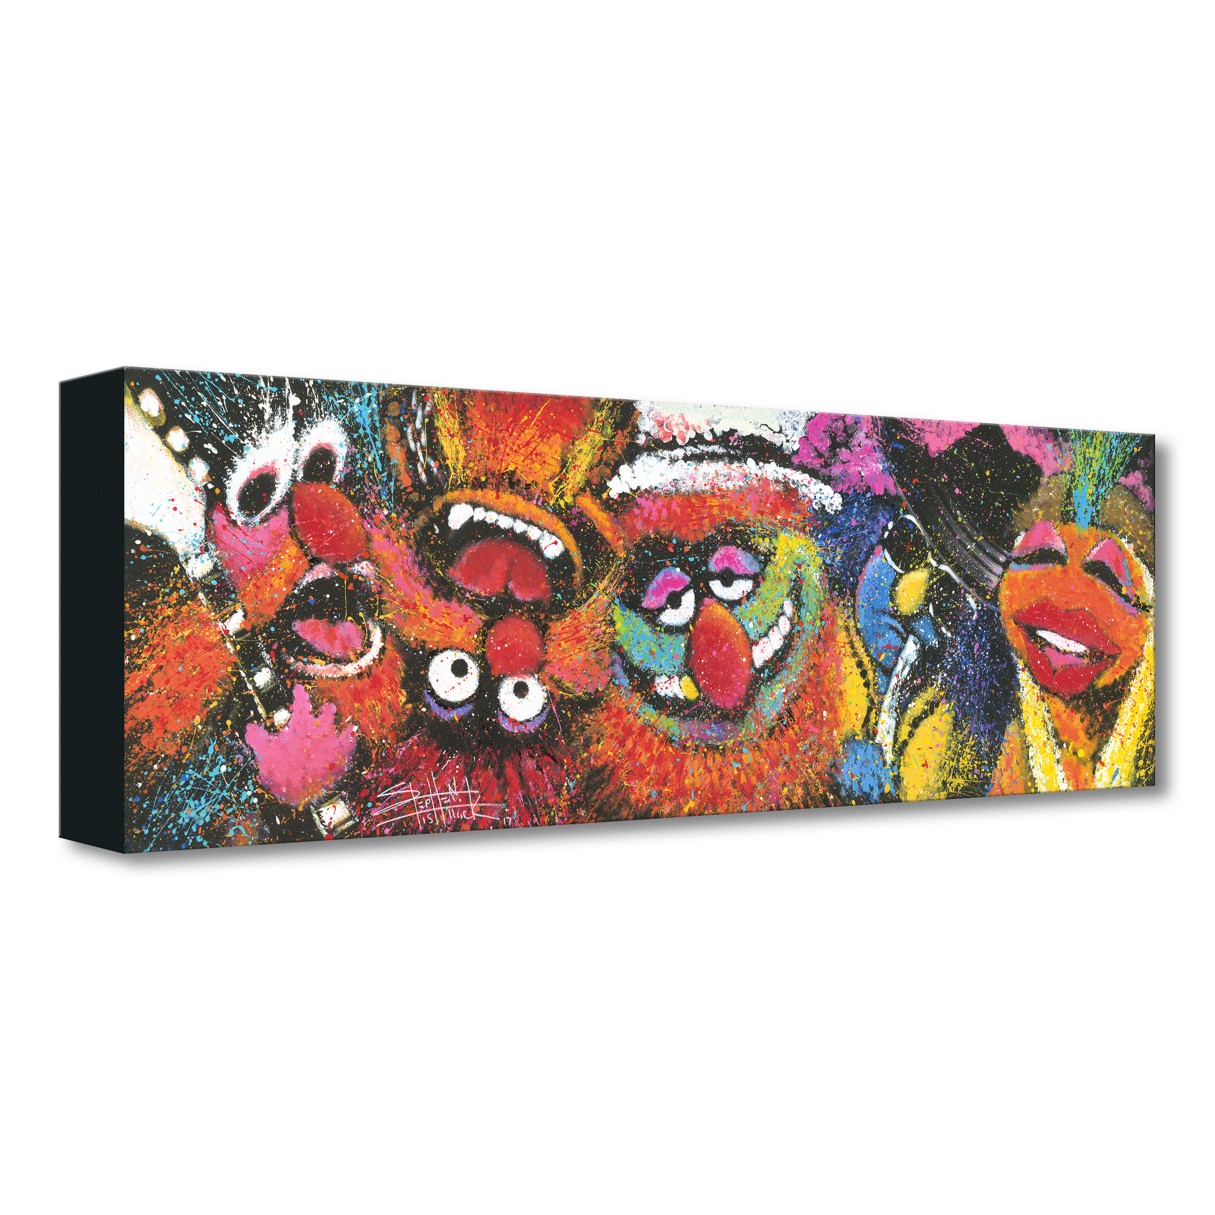 The Muppets ''Electric Mayhem'' Giclée on Canvas by Stephen Fishwick